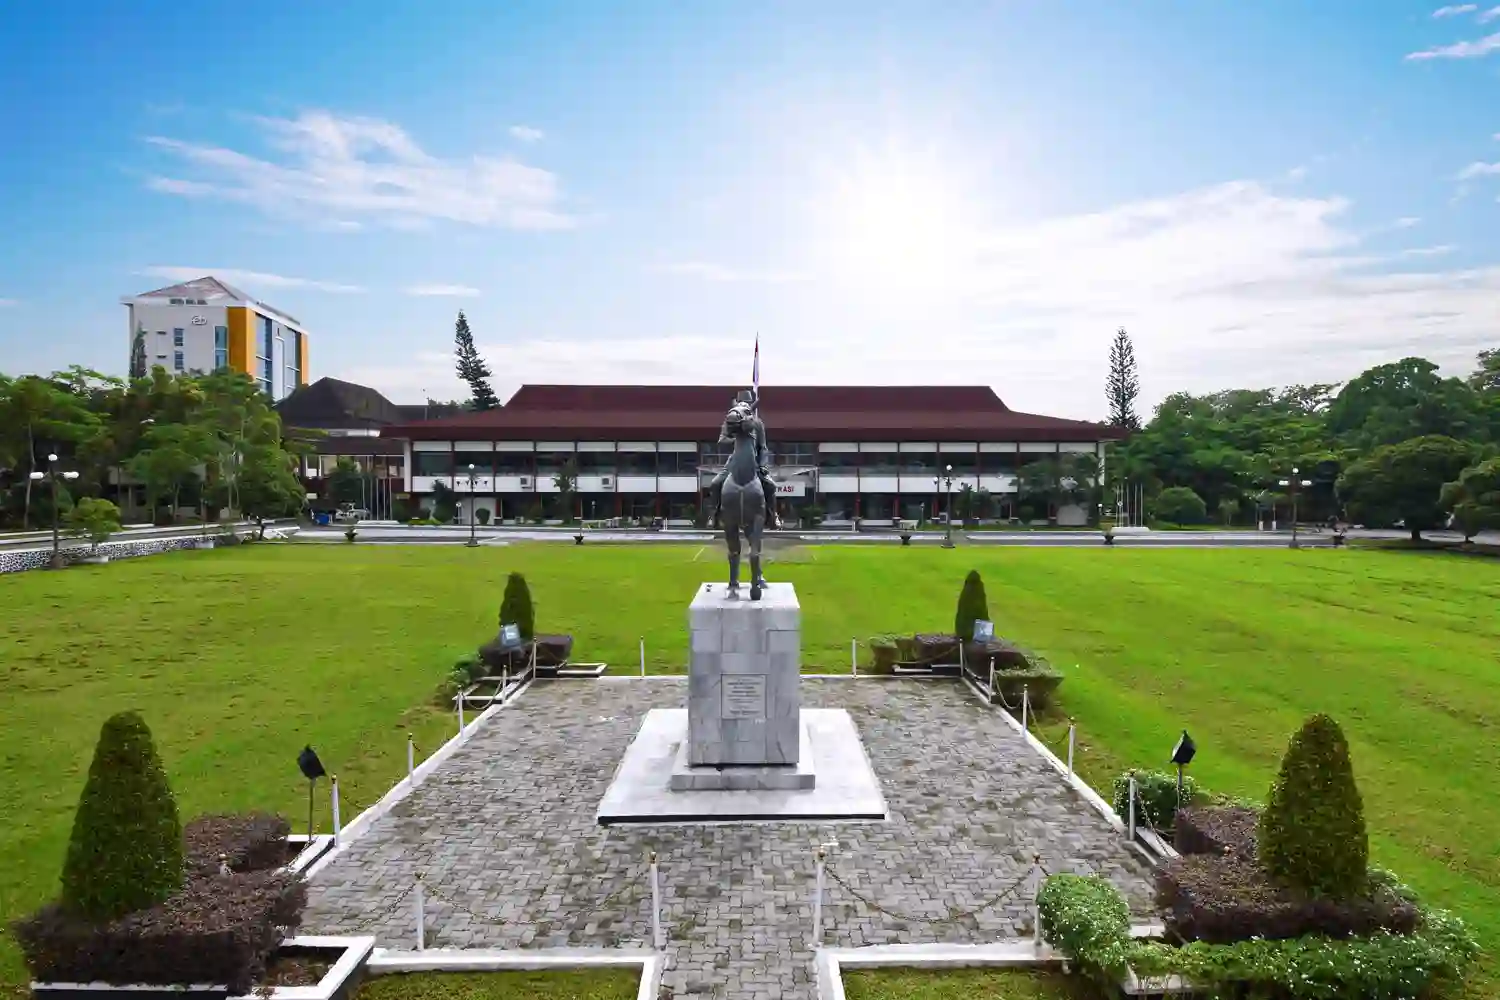 2. Universitas Jenderal Soedirman